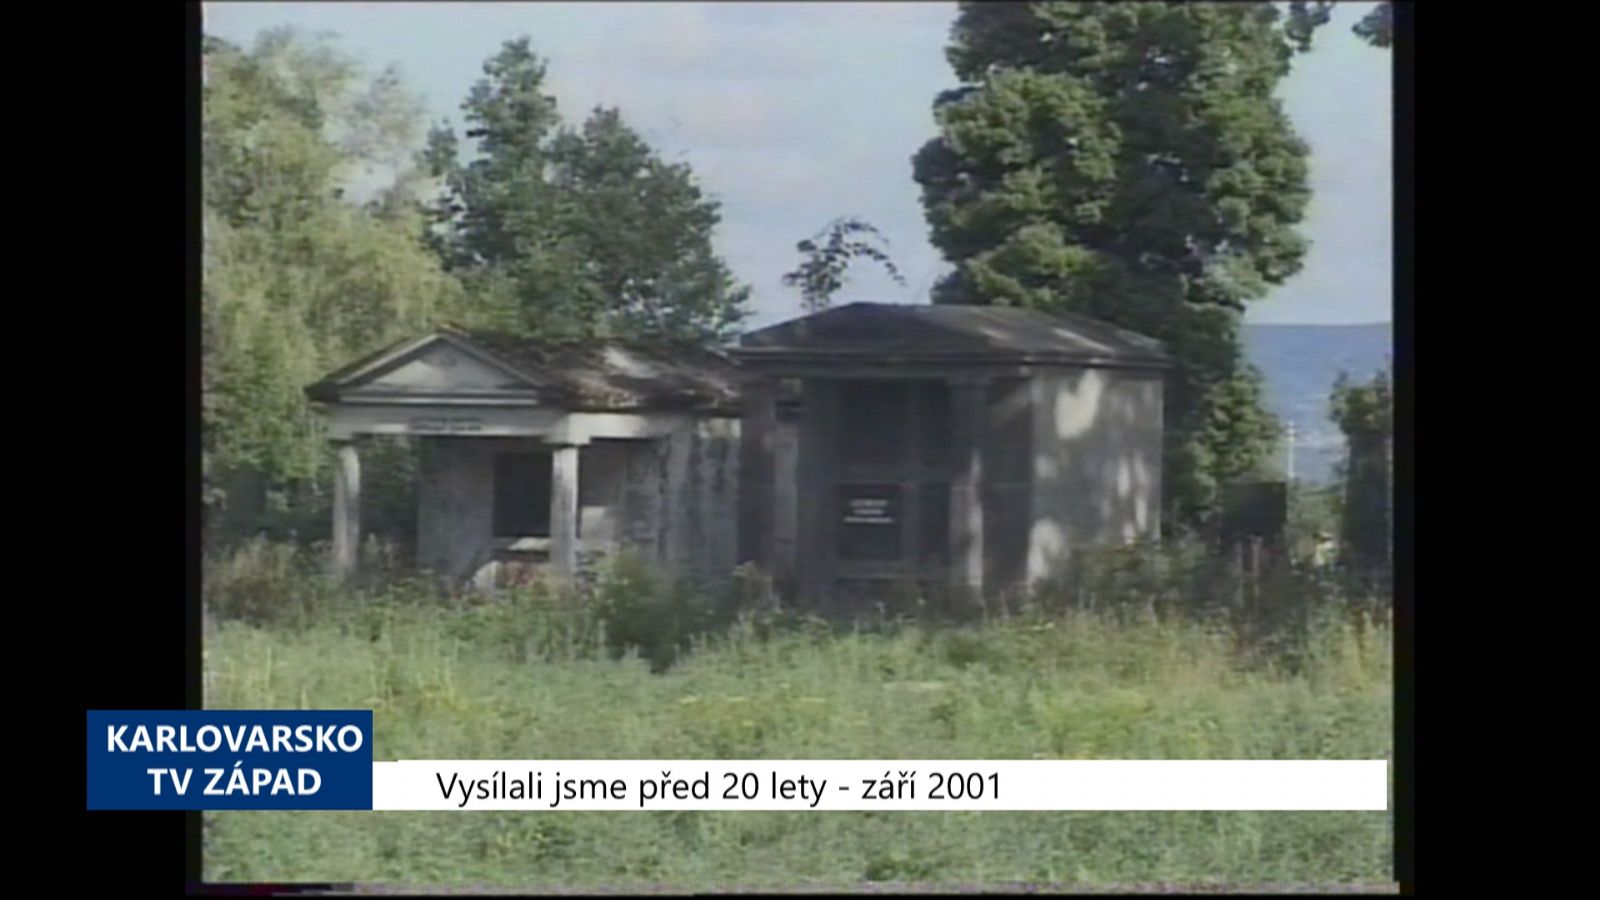 2001 – Cheb: Úpravy hřbitova budou pokračovat (TV Západ)